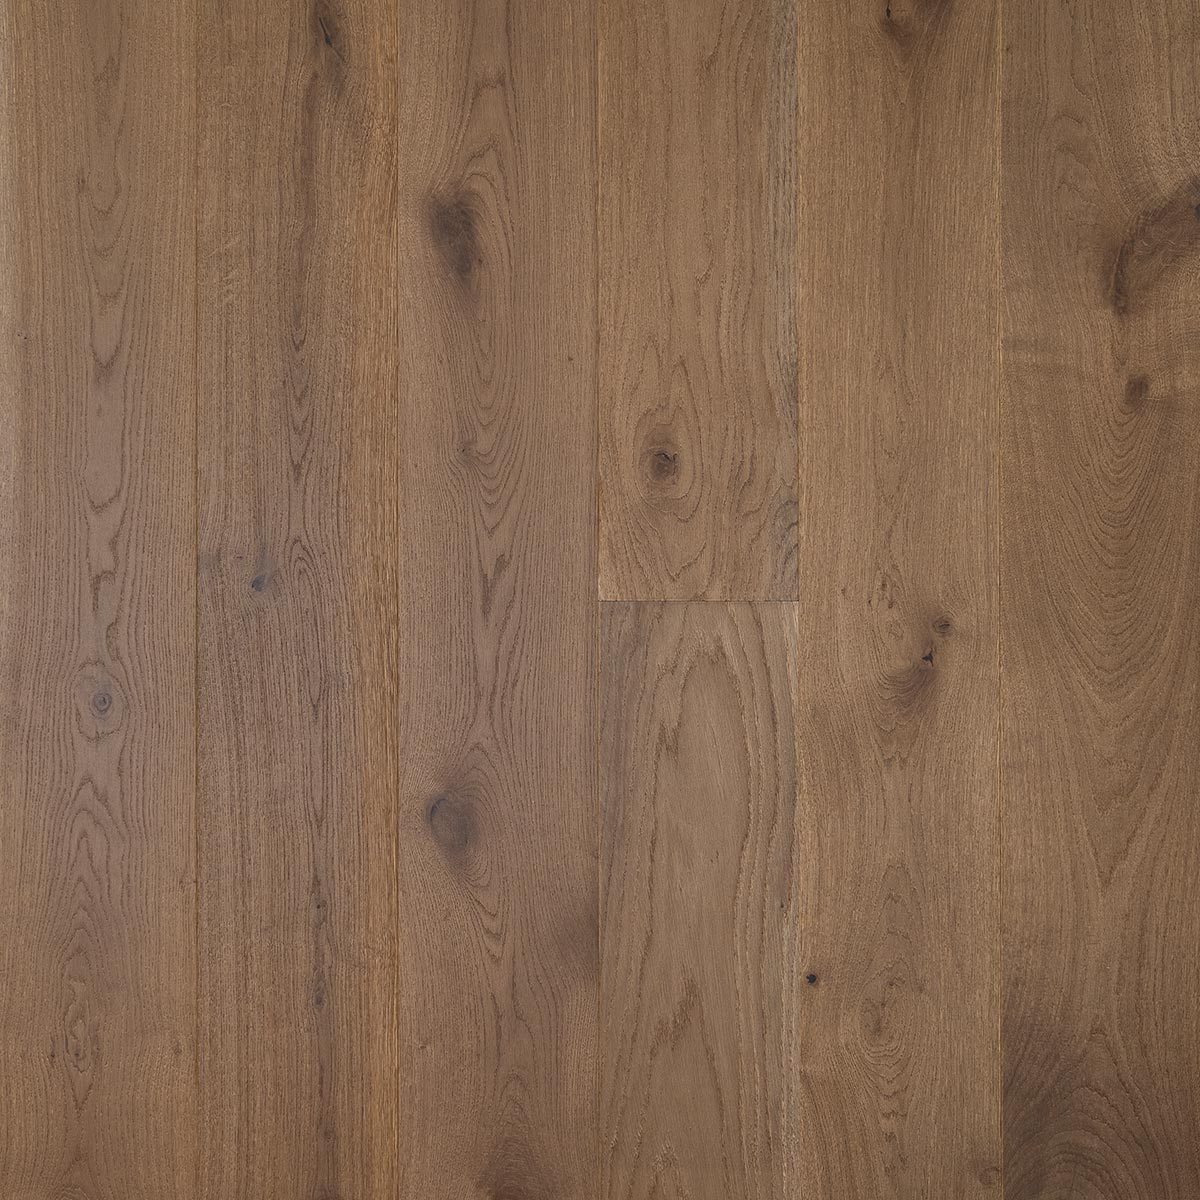 HG109 Grasmere - Brushed & Oiled Rustic Oak Bevelled Wooden Floor